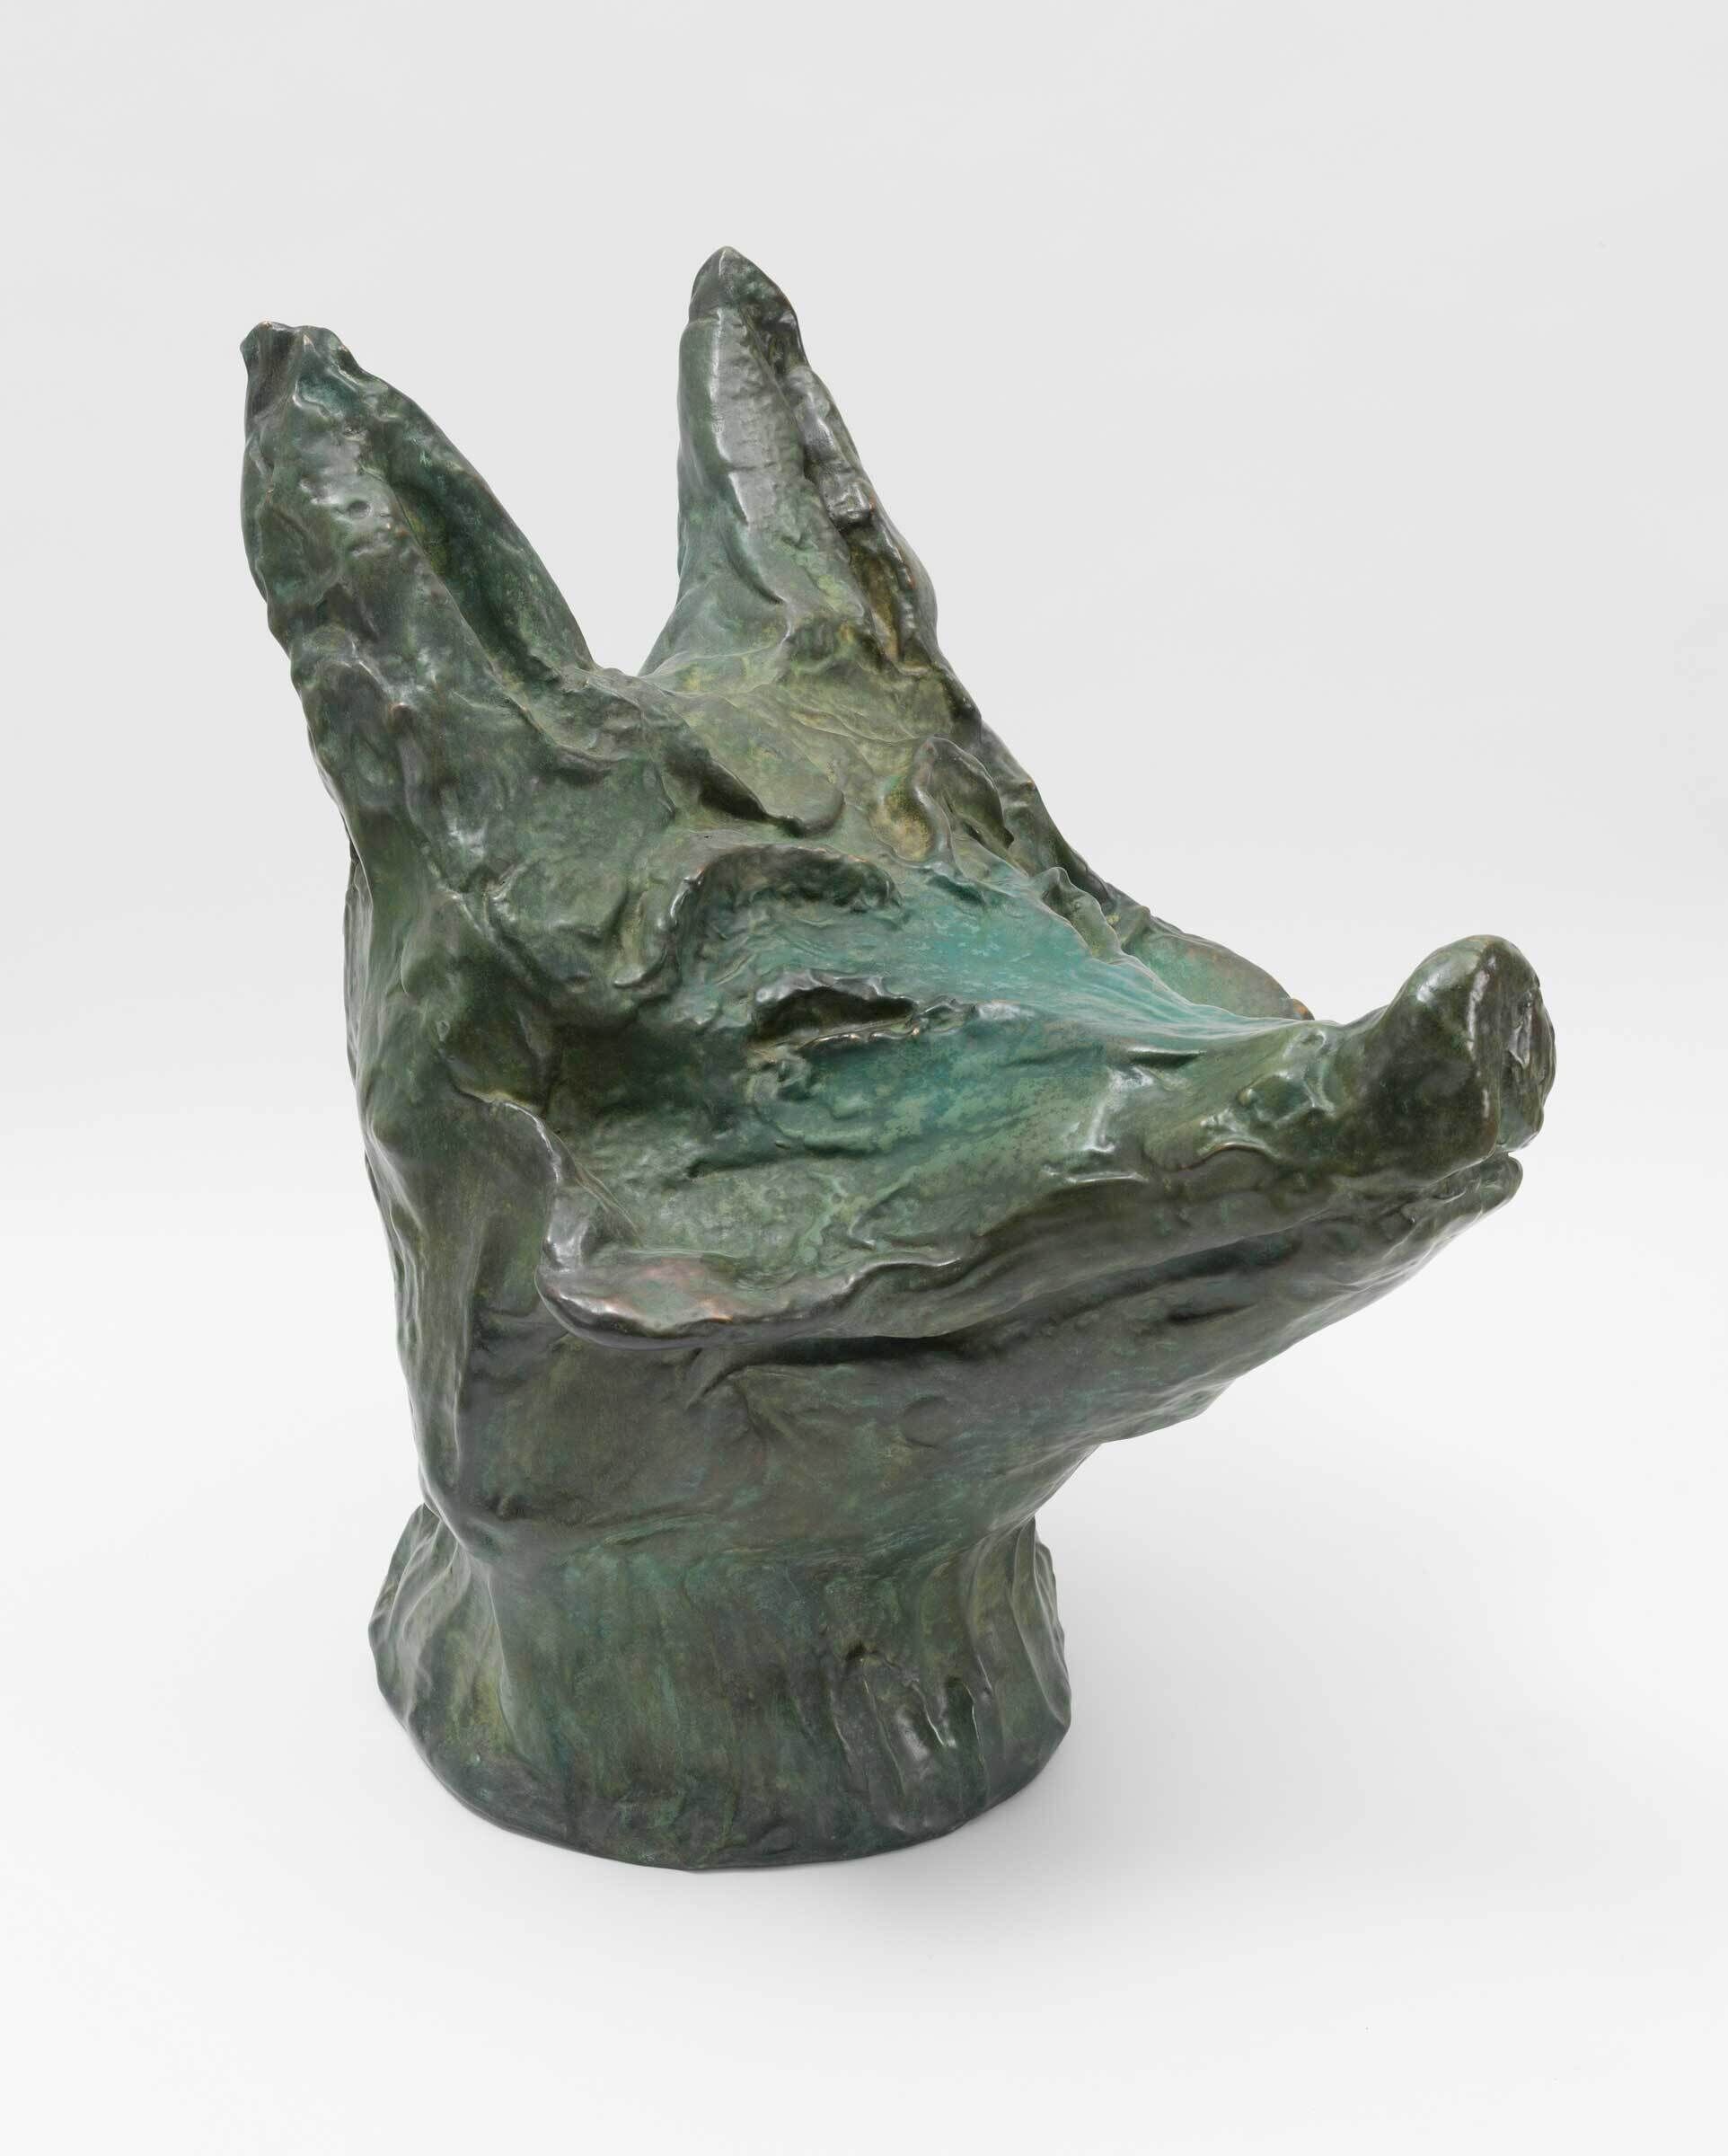 A cast bronze sculpture of a coyote's head.